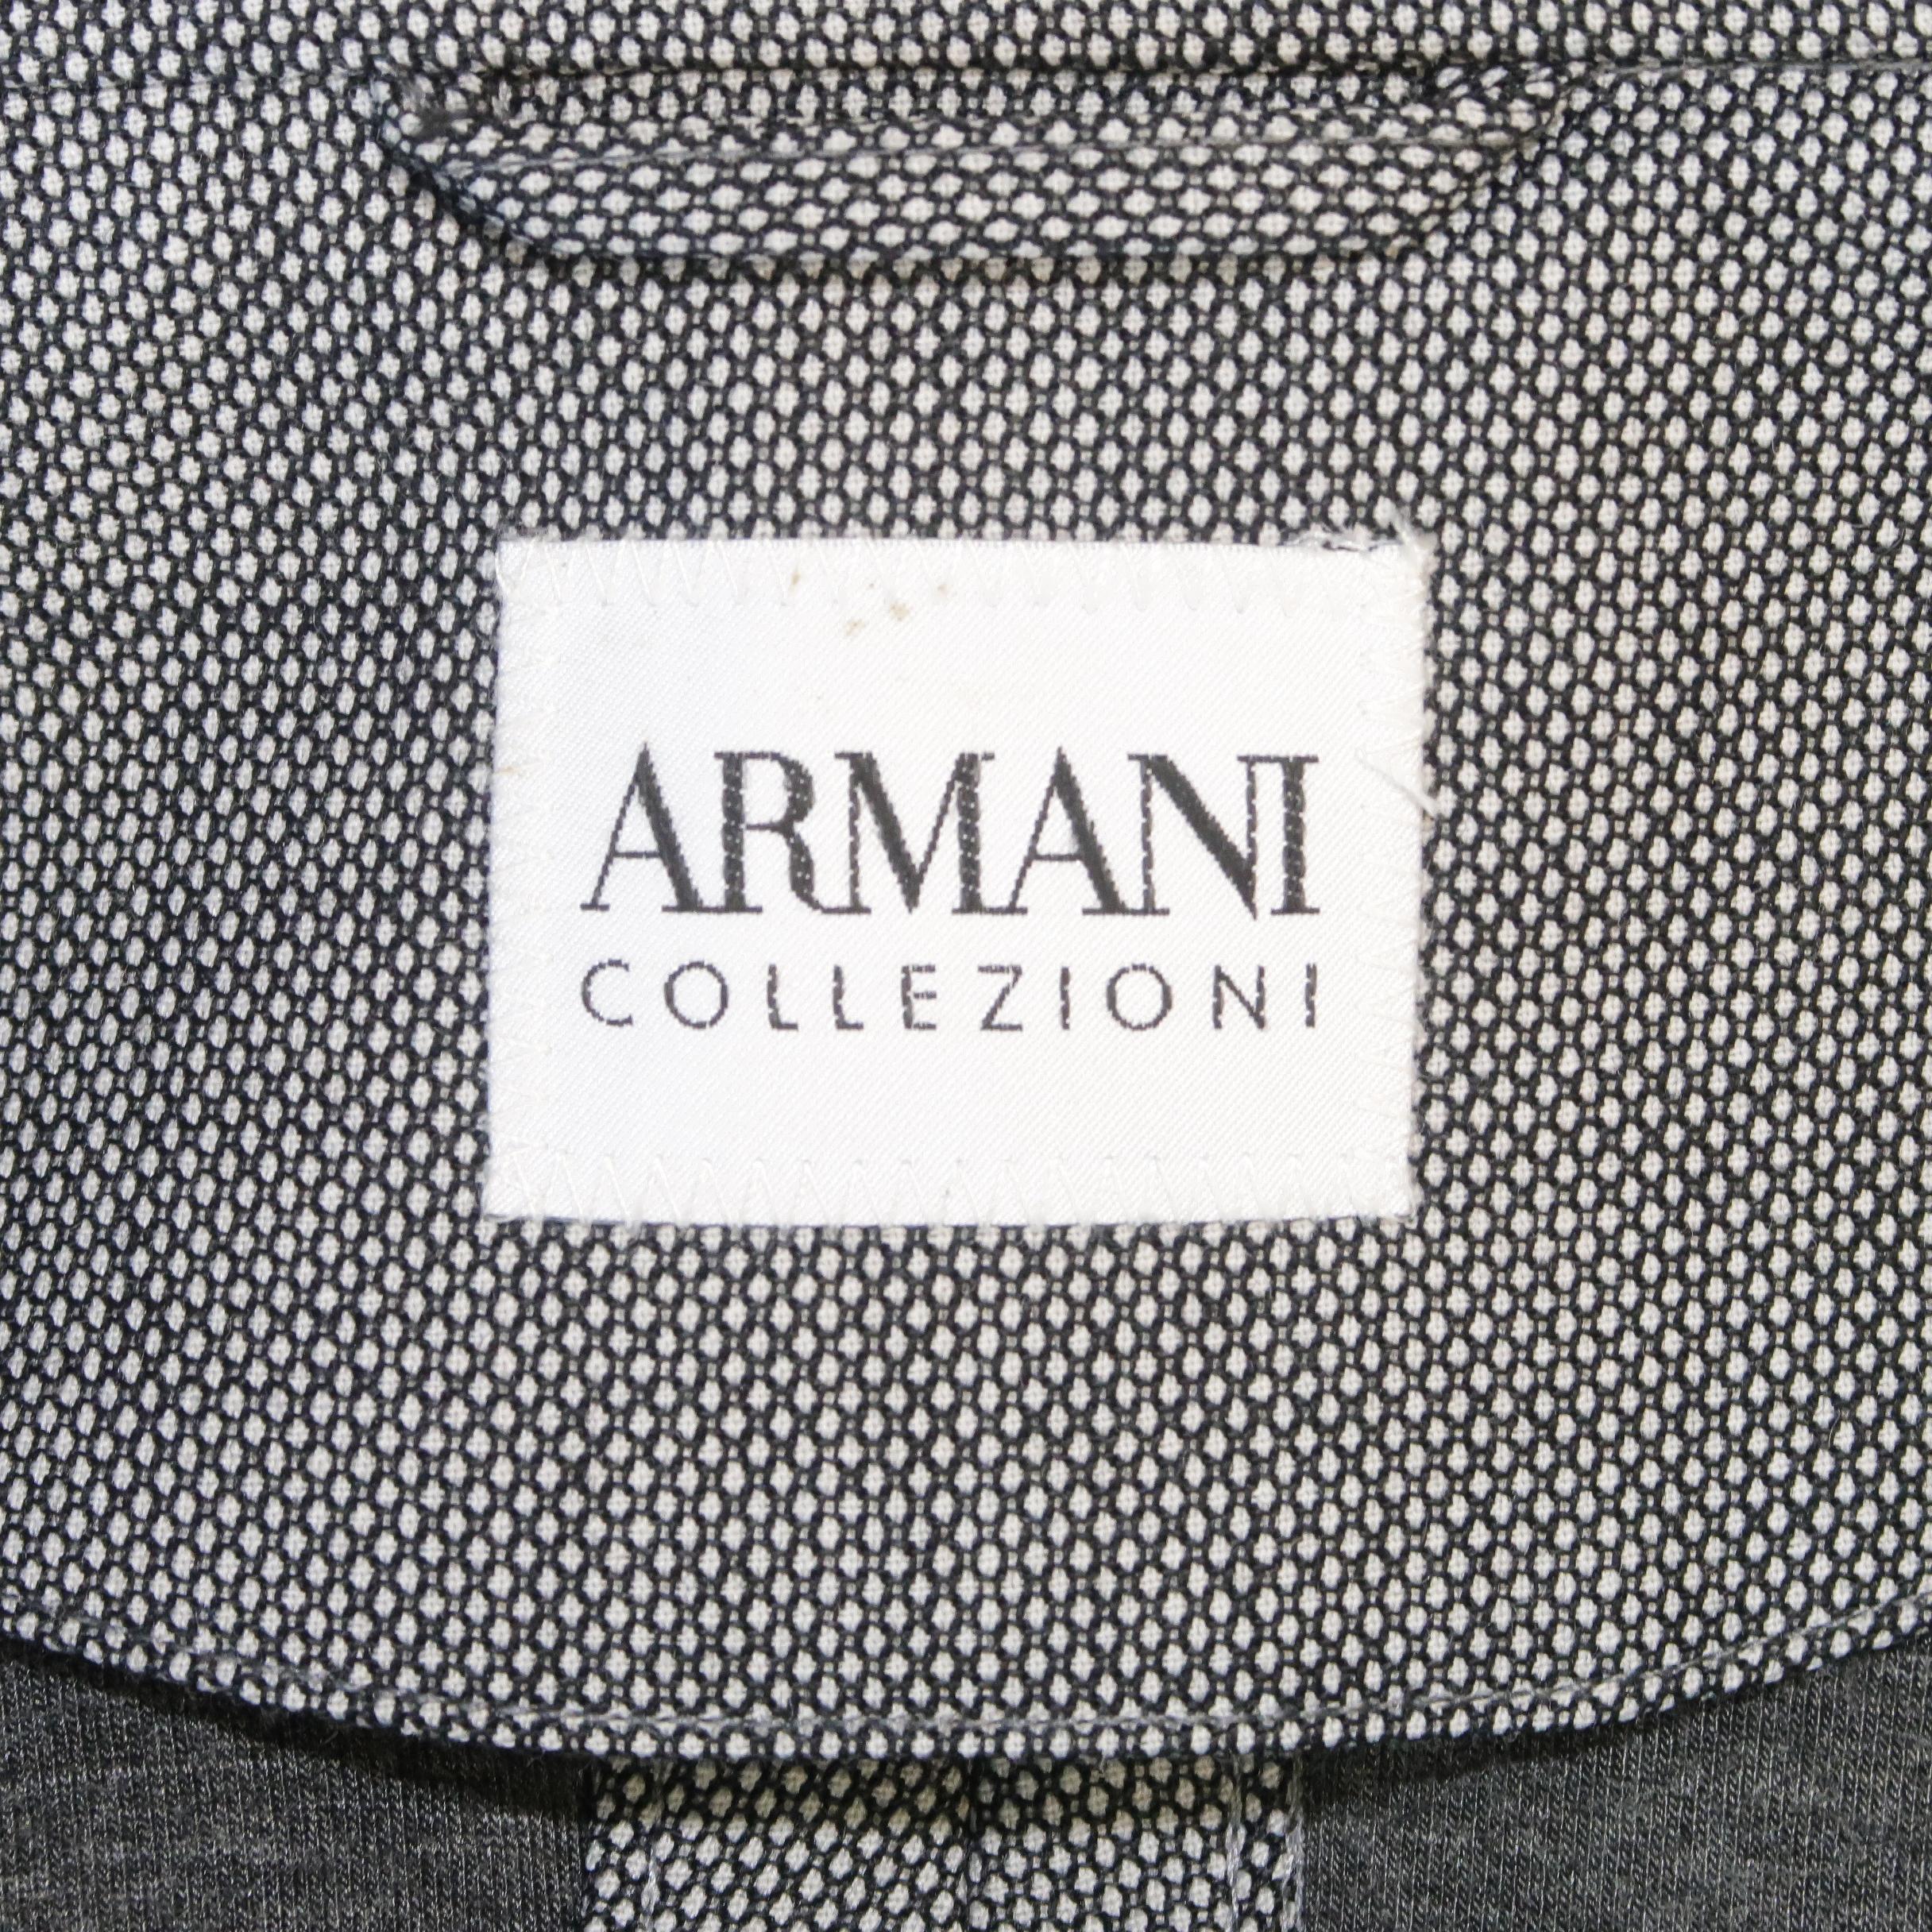 ARMANI COLLEZIONI 44 Black & White Nailhead Wool Blend Jacket 5